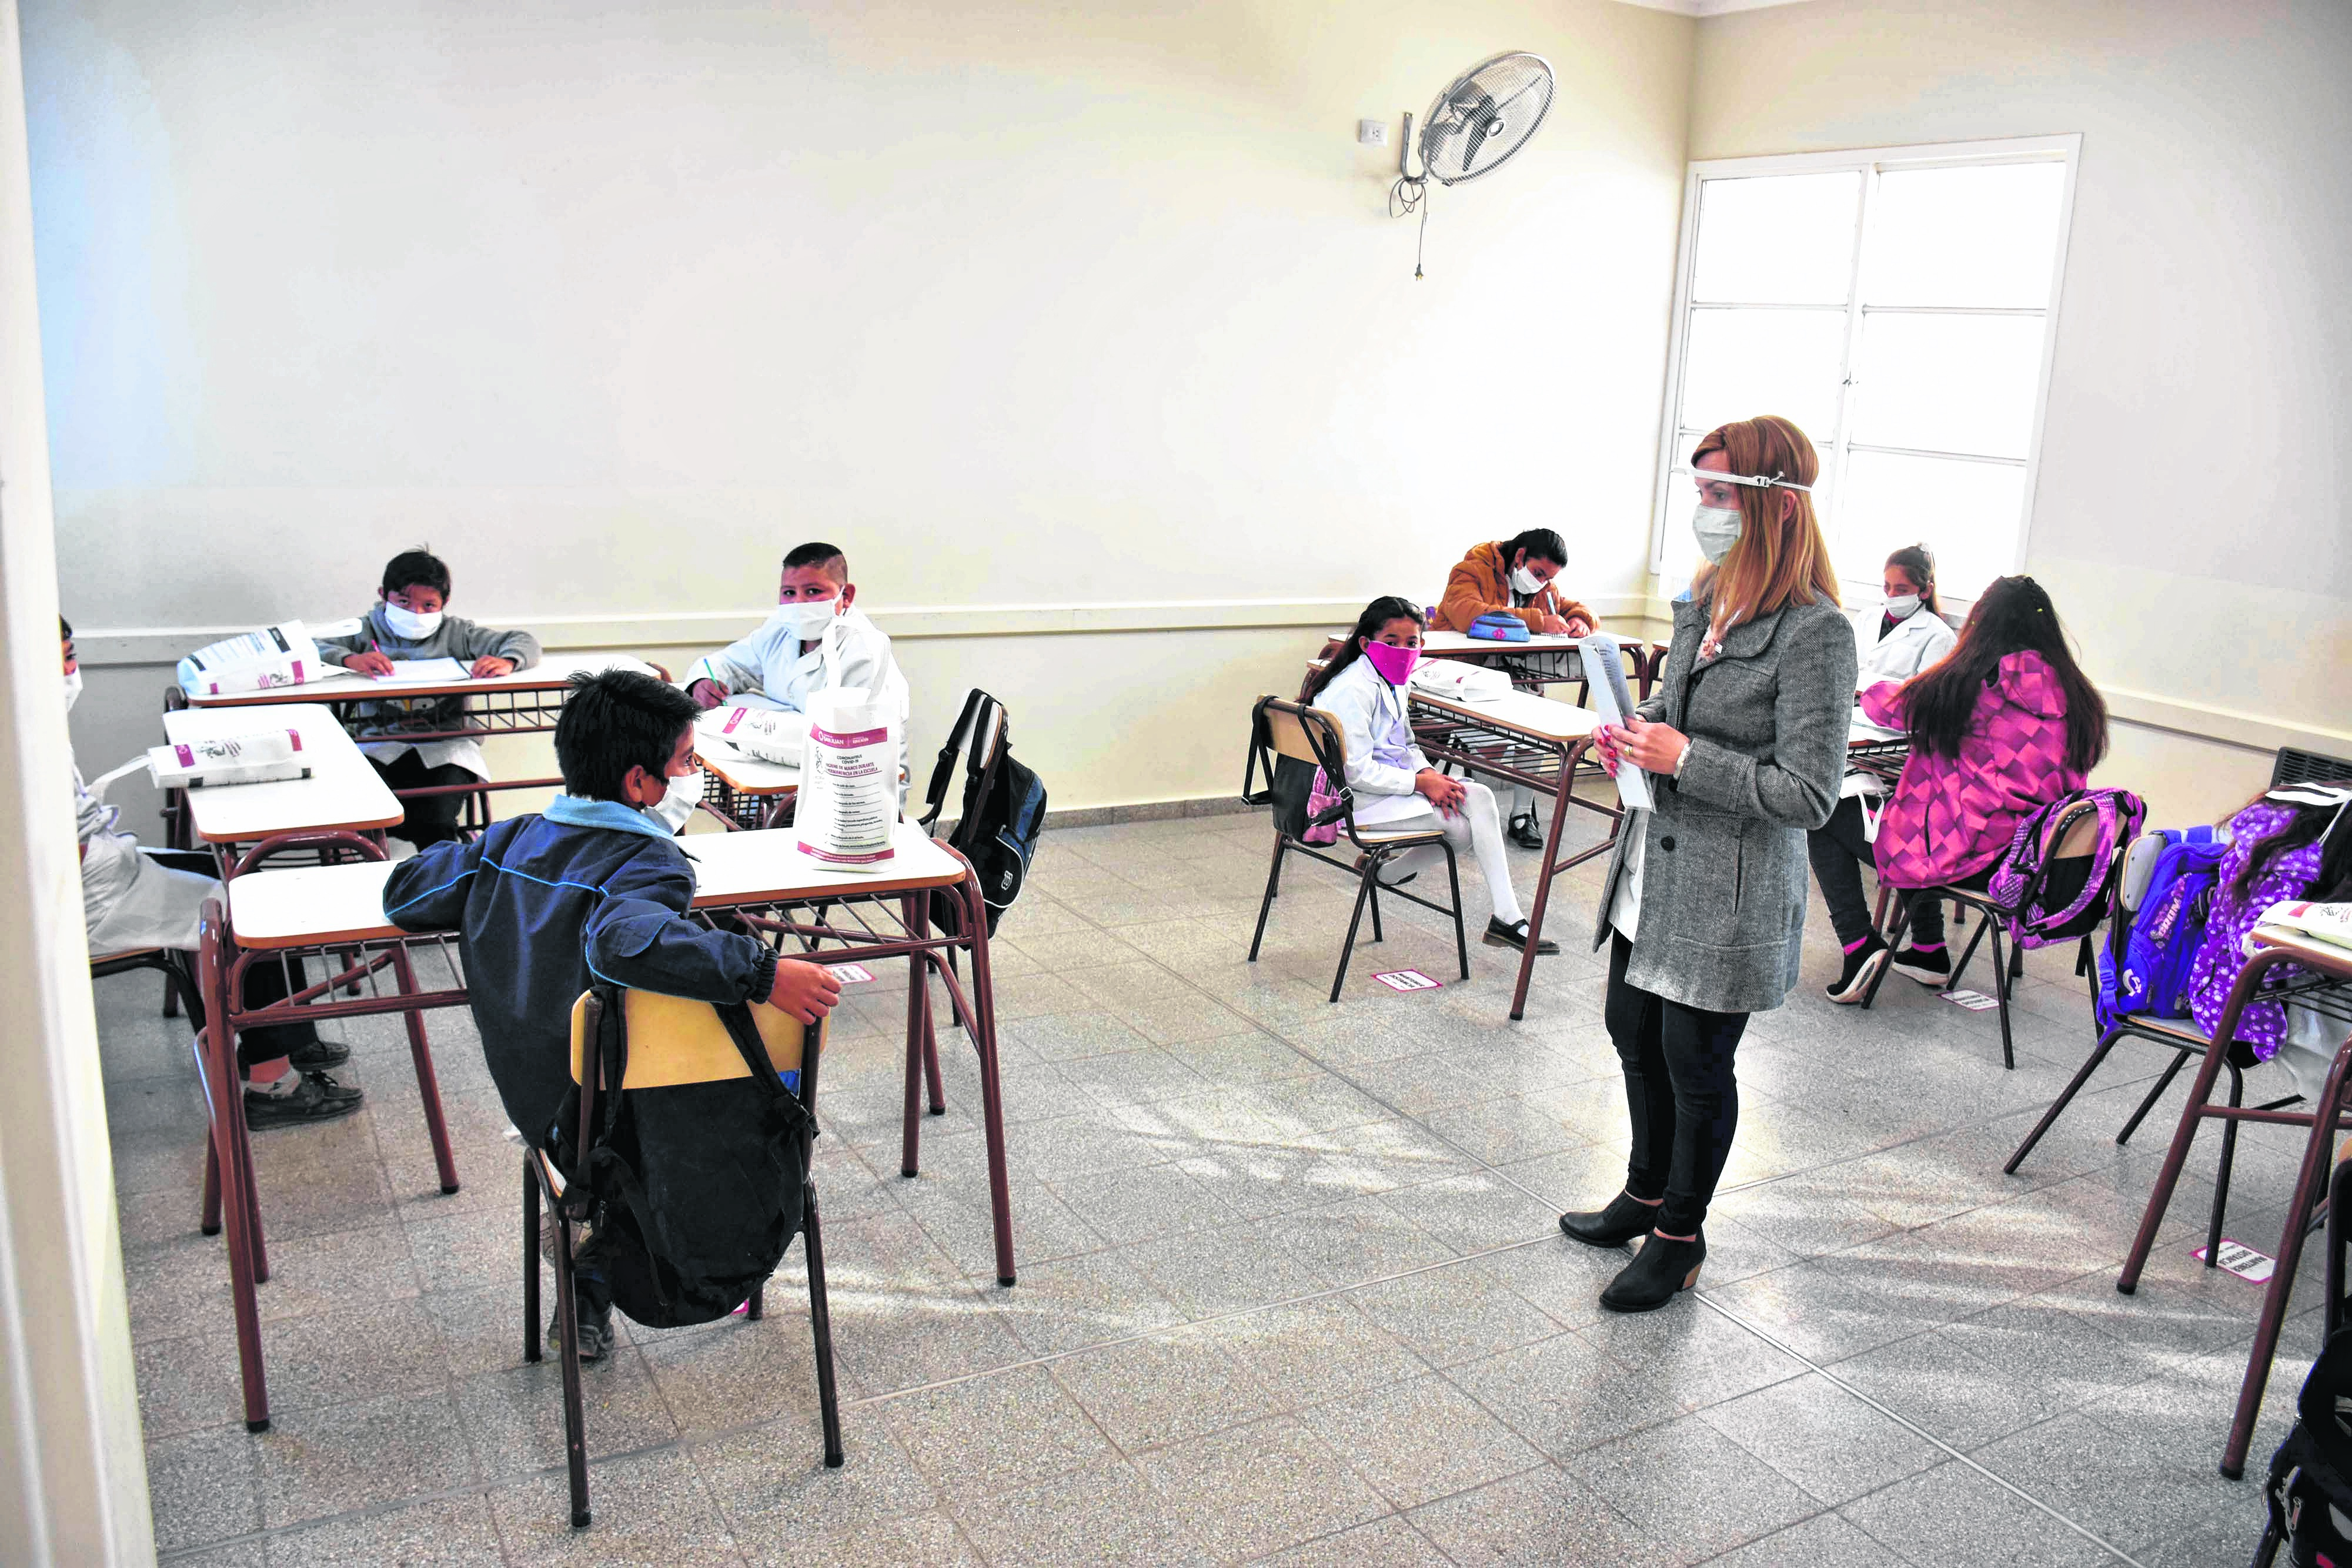 San Juan: Alumnos de todos los niveles regresan a las aulas, con estrictos protocolos sanitarios, en el marco de la pandemia Covid-19. Foto: Ruben Paratore/Télam/cgl 10082020